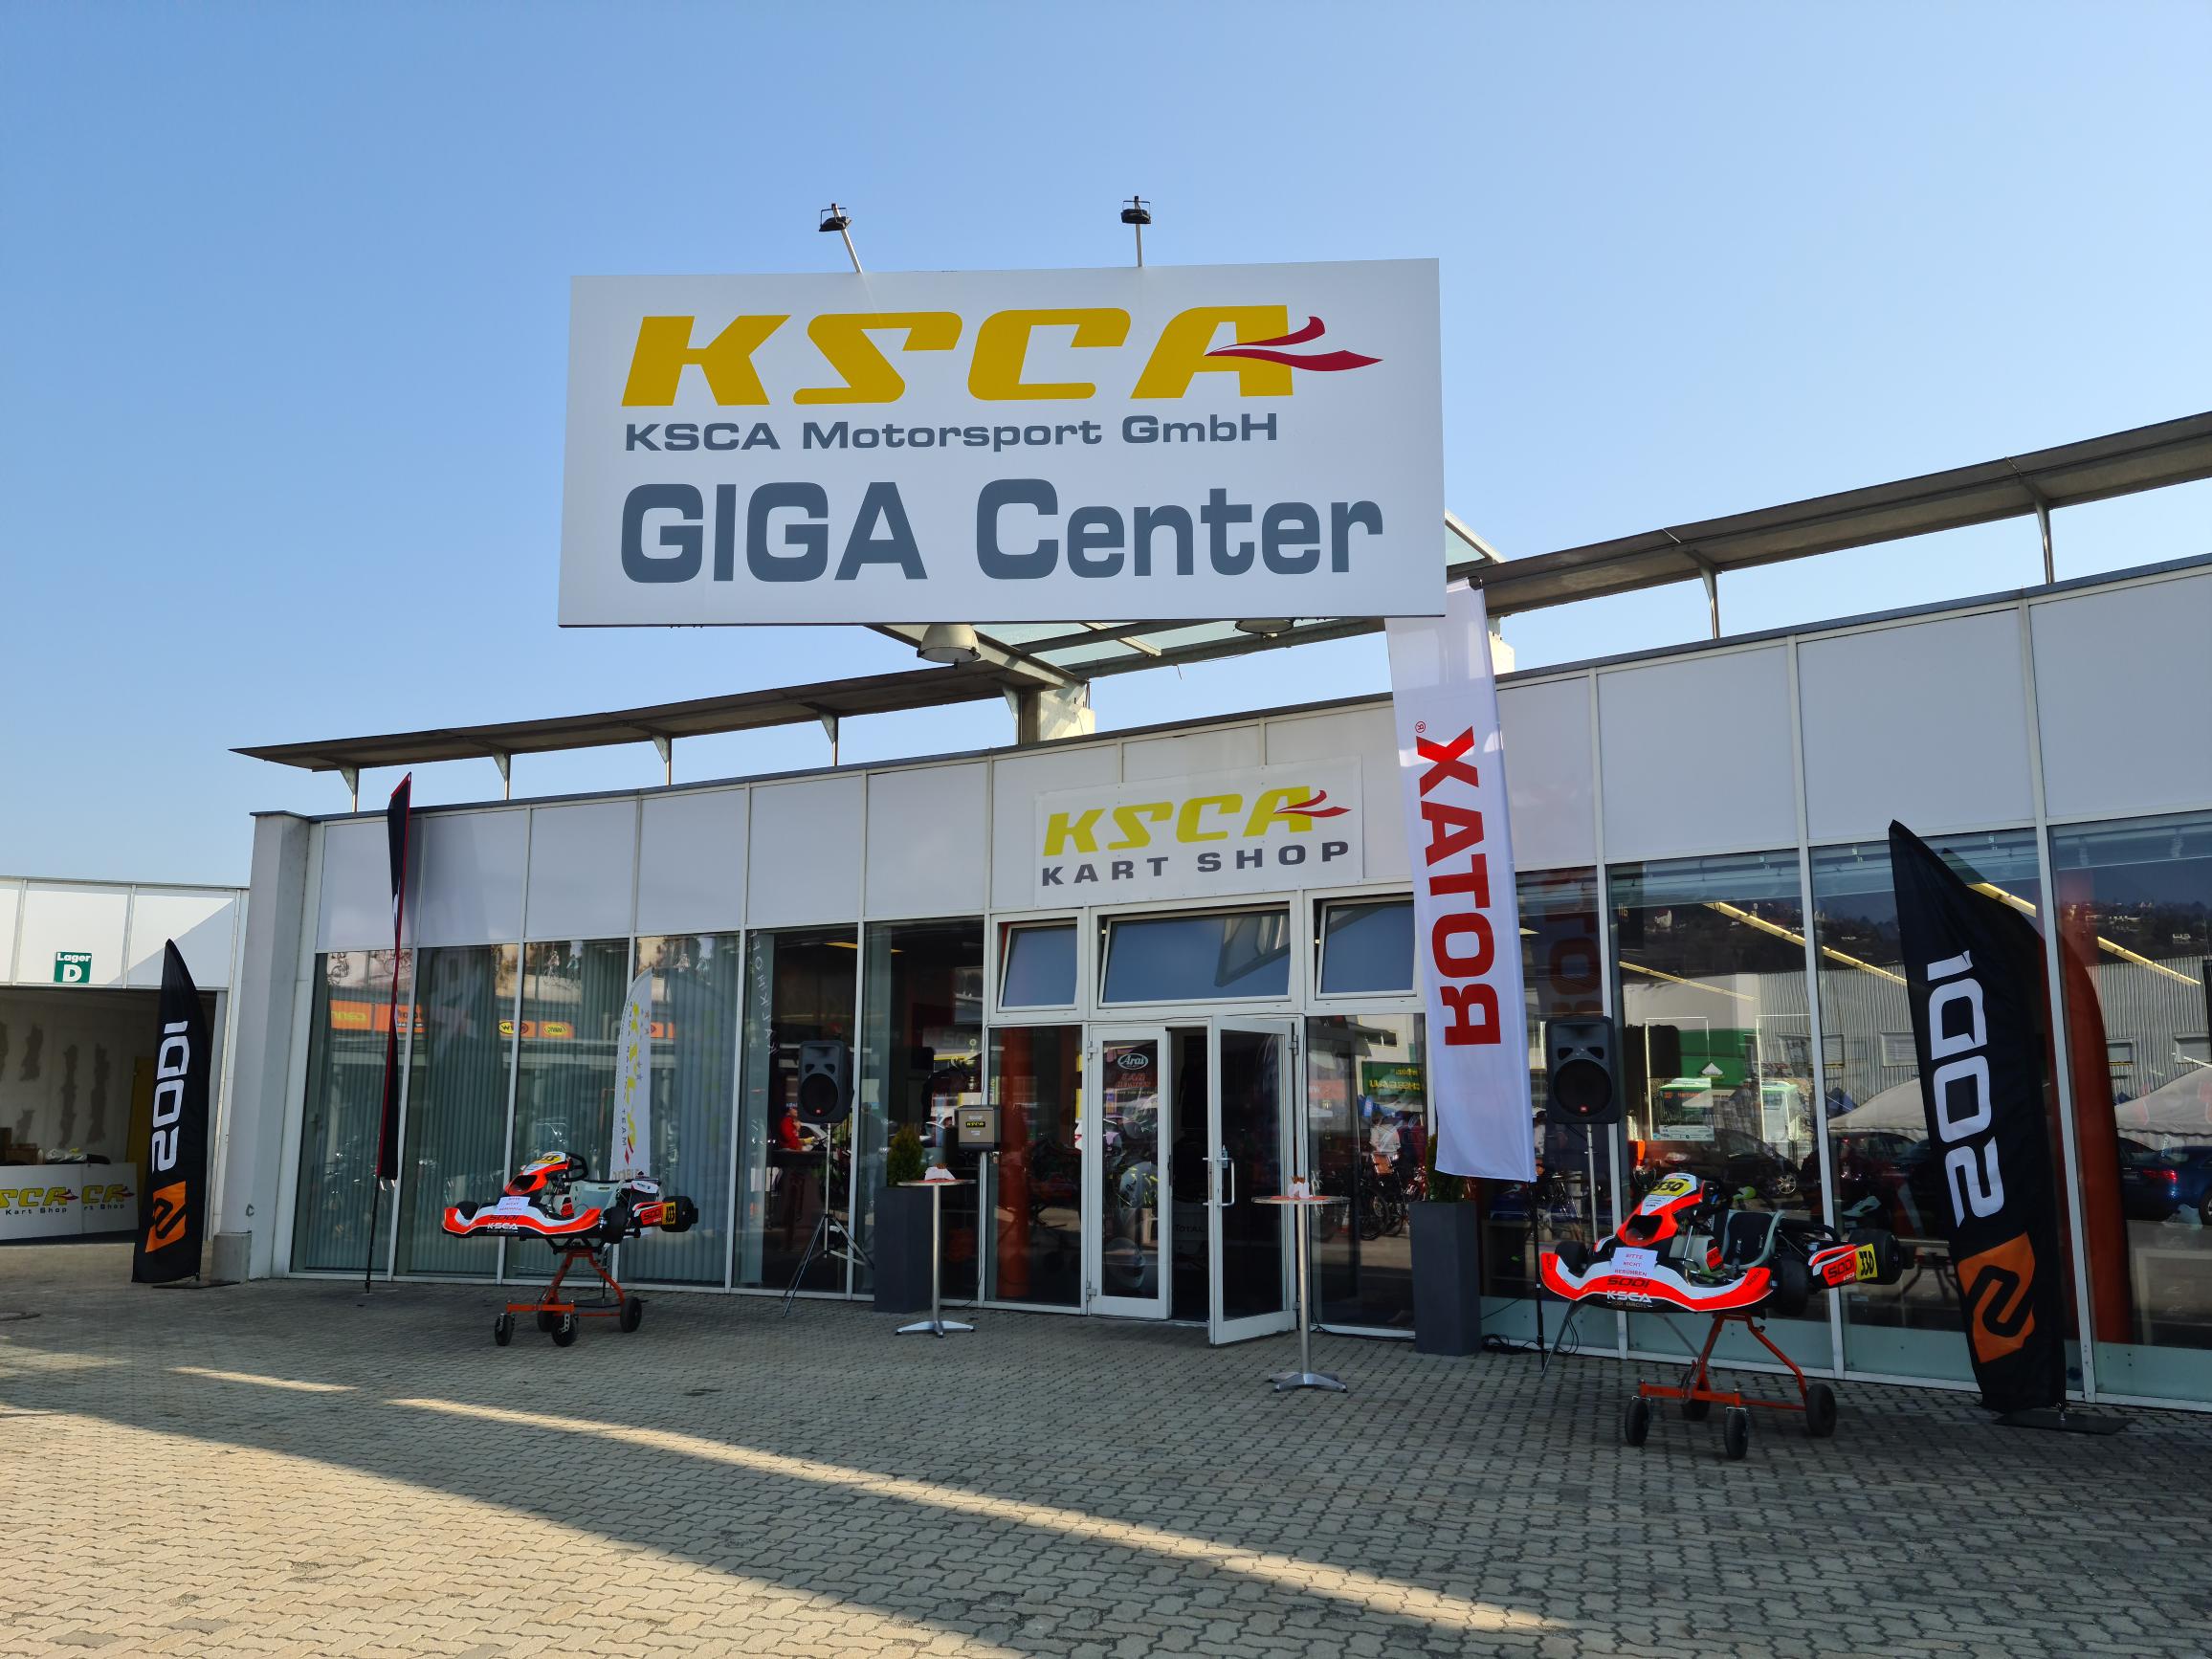 Benzintrichter schwarz mit Sieb. KSCA Motorsport GmbH - KSCA Kart Shop